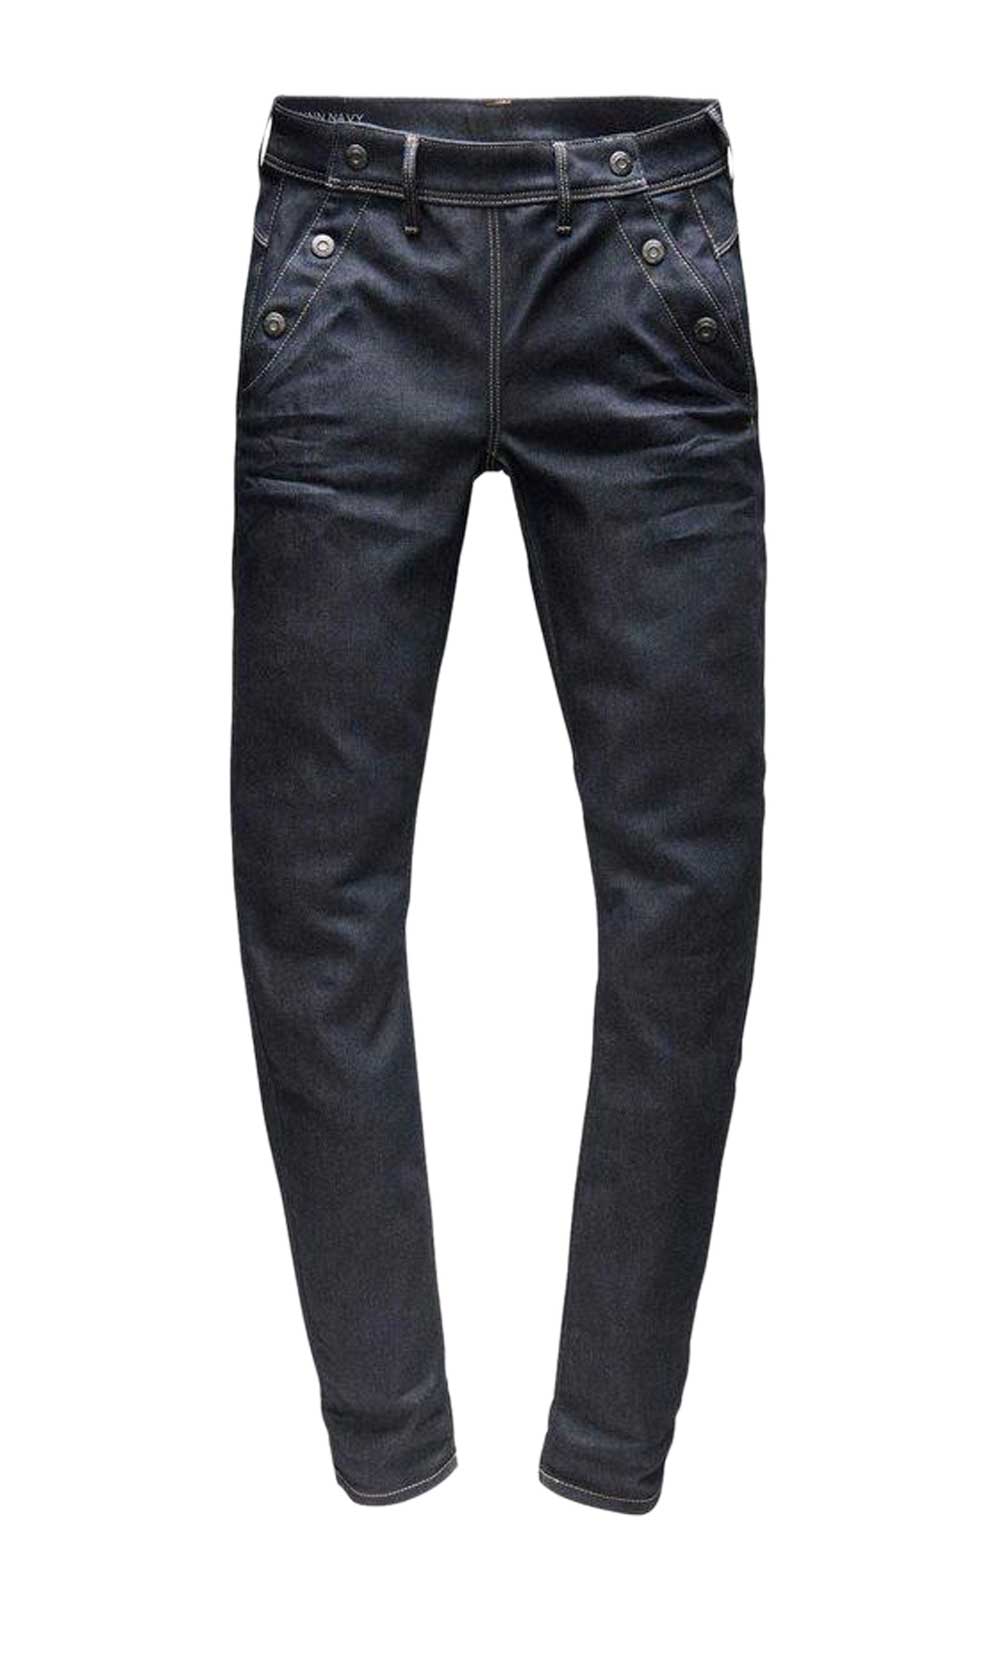 G-Star Raw Marken-Damen-Jeans, dunkelblau, 32 inch